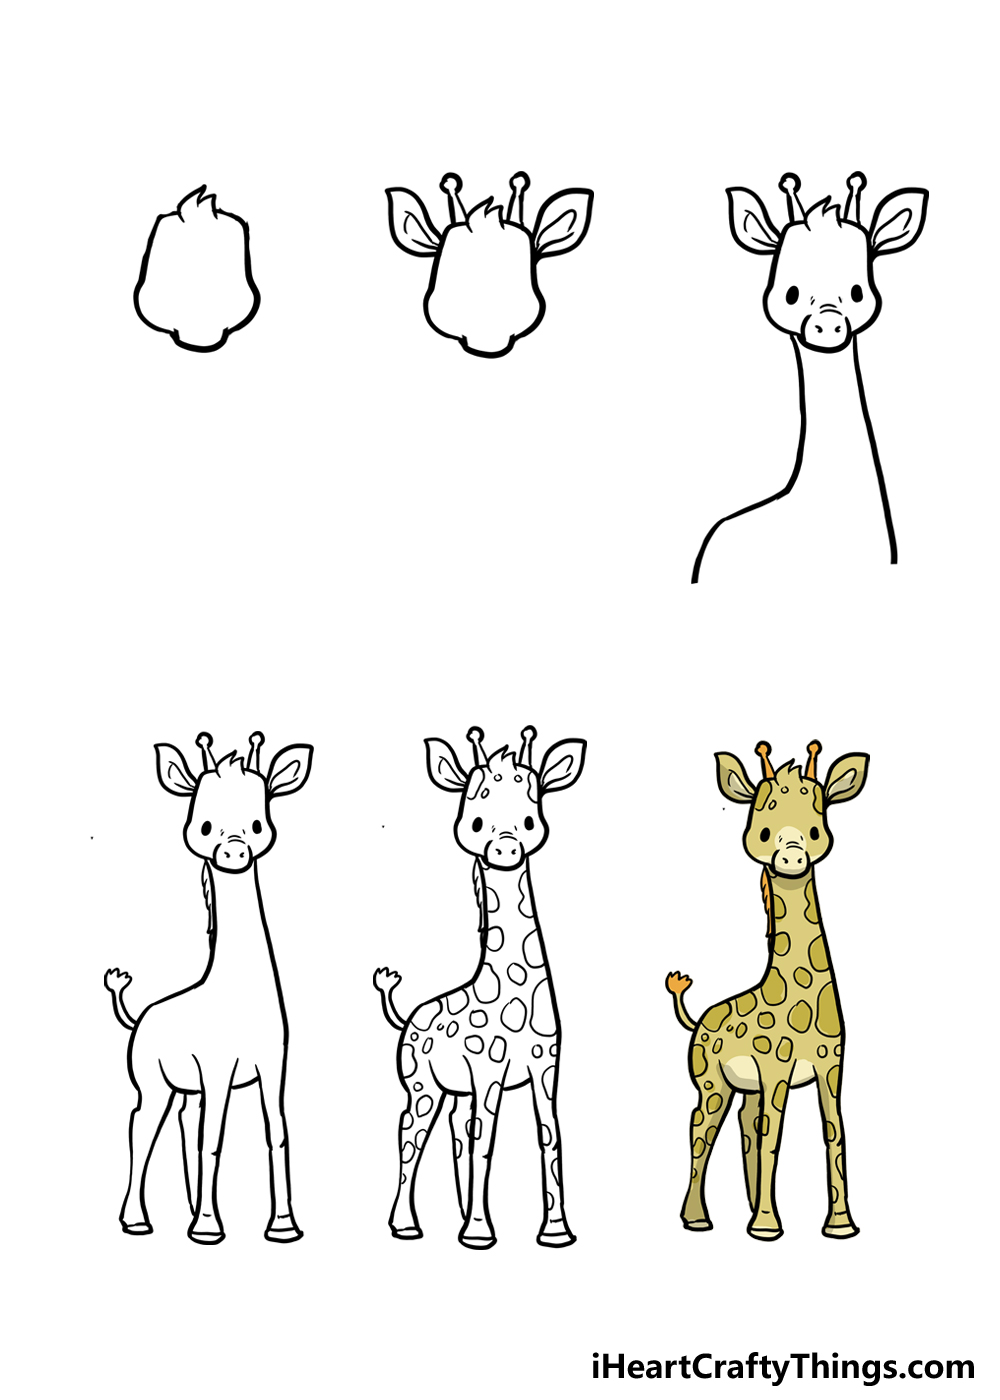 How to Draw A Cute Giraffe